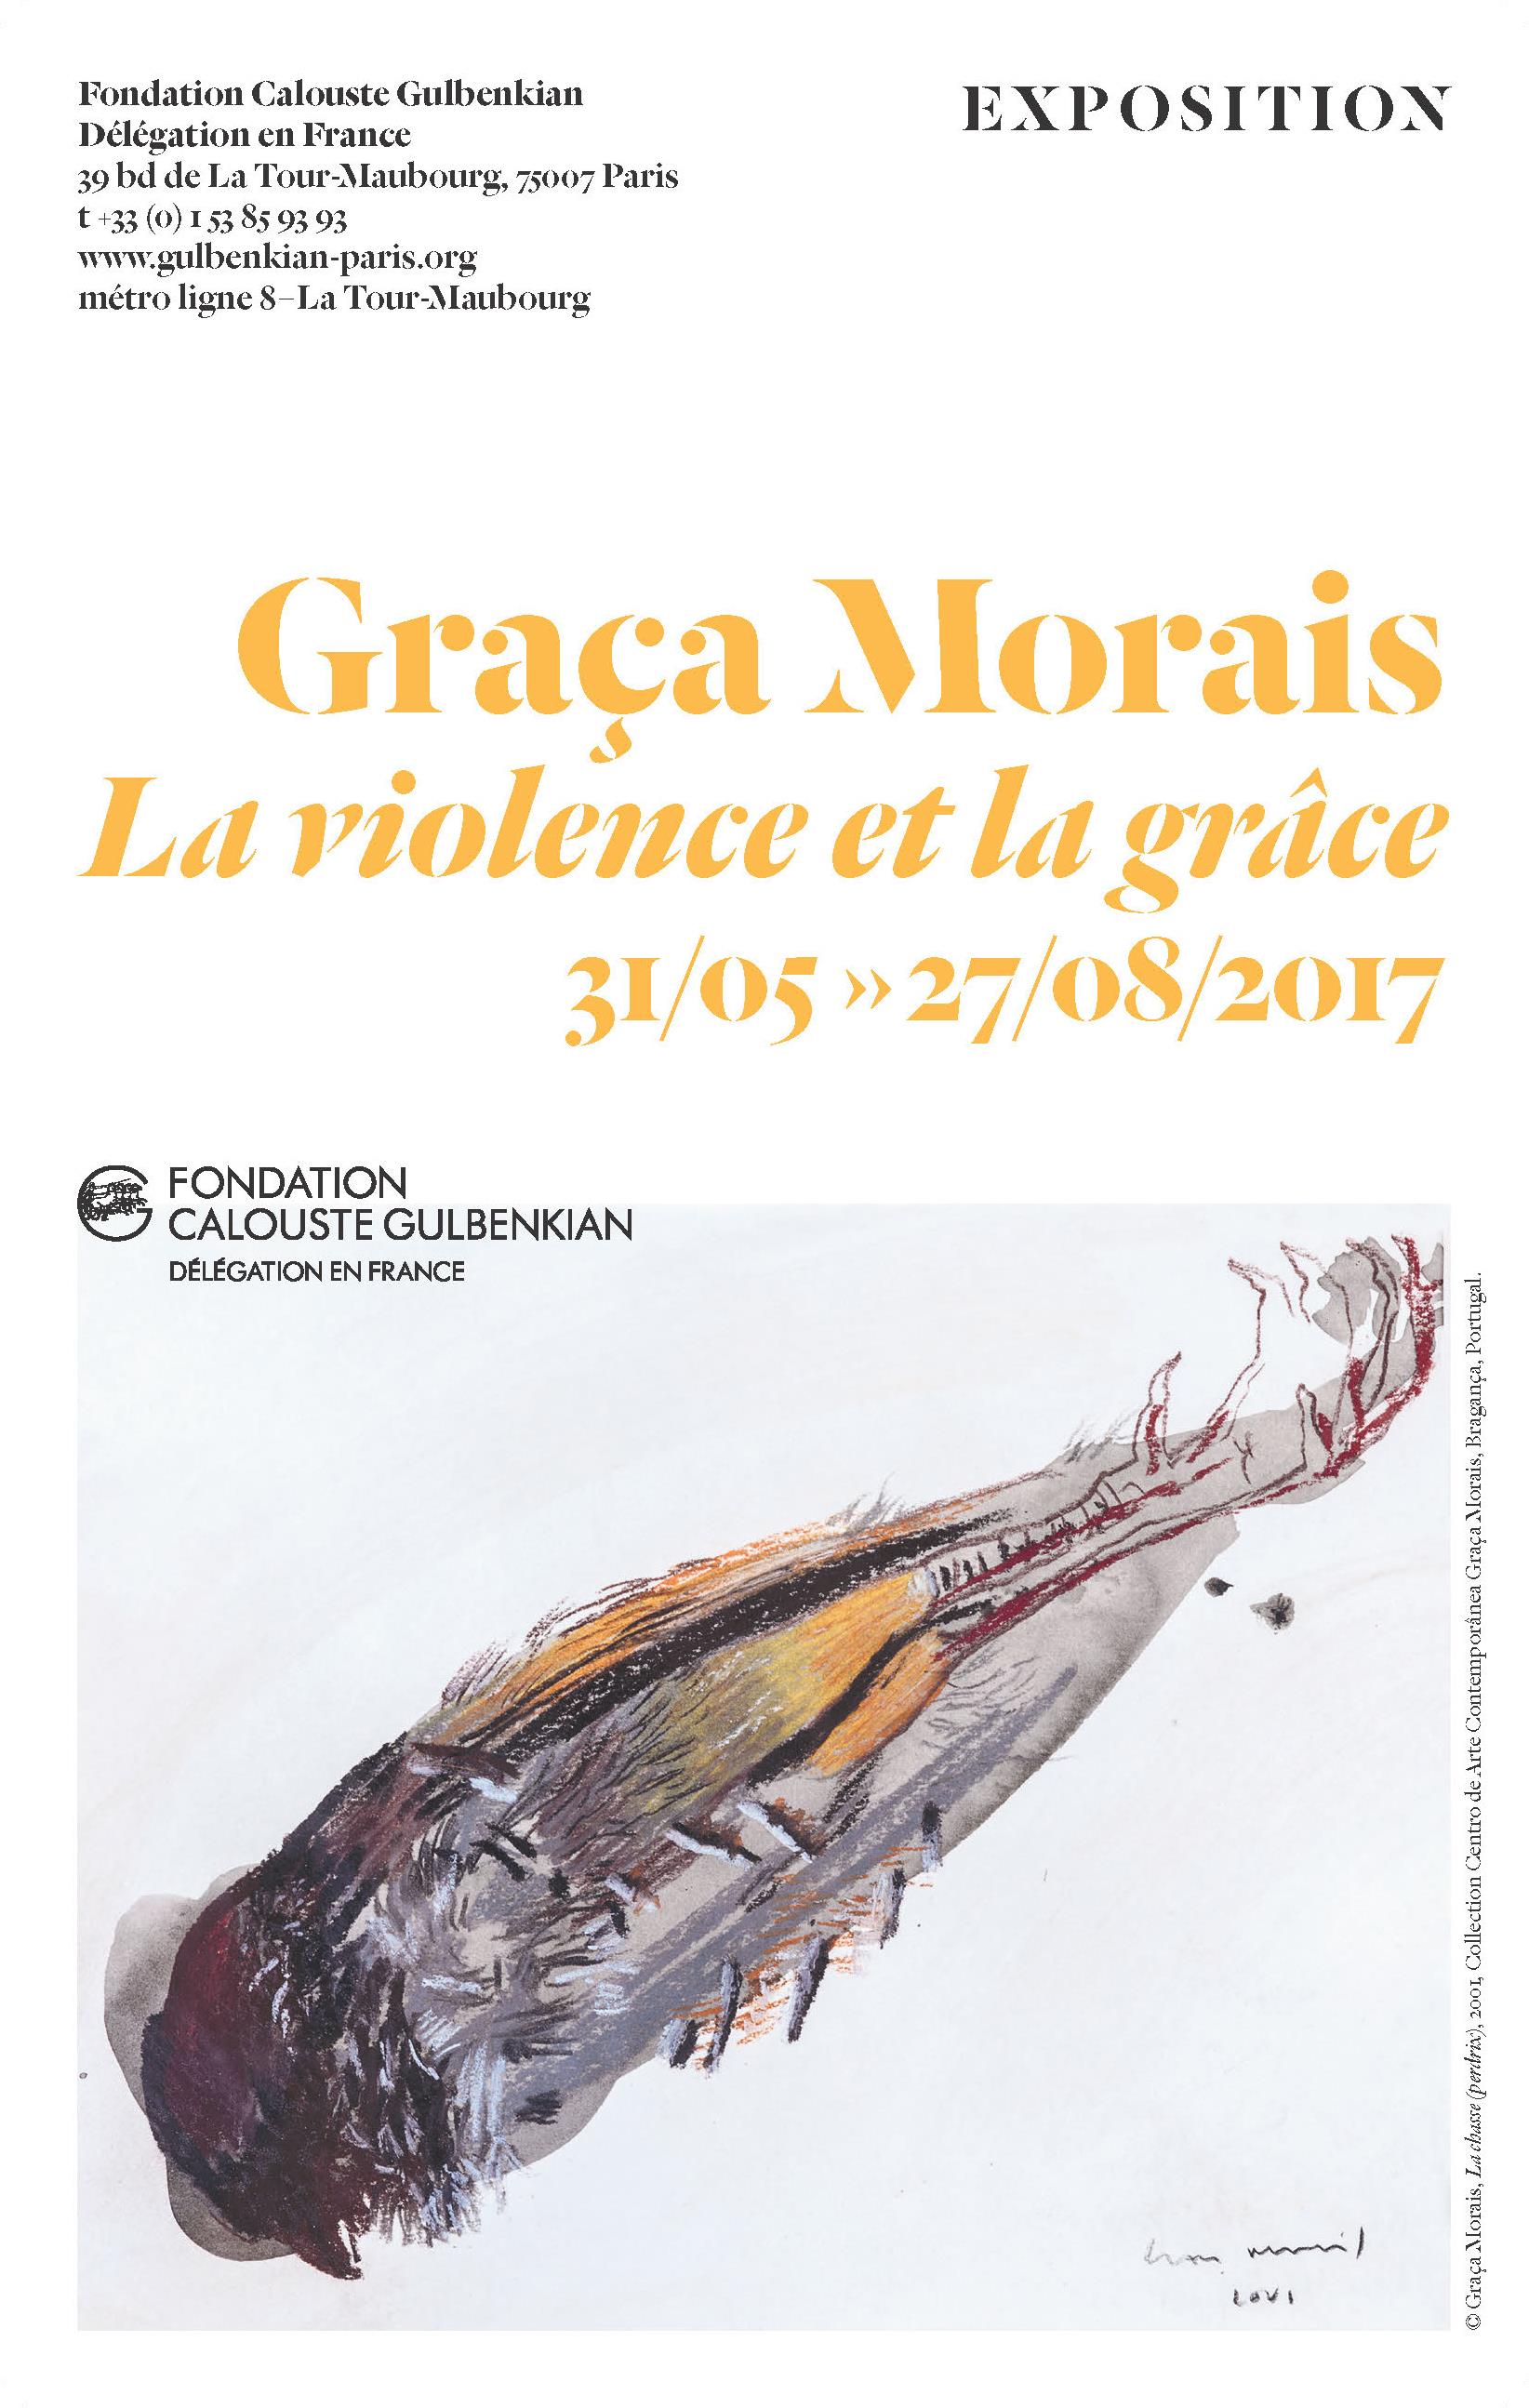 Graça Morais. La Violence et la Grâce